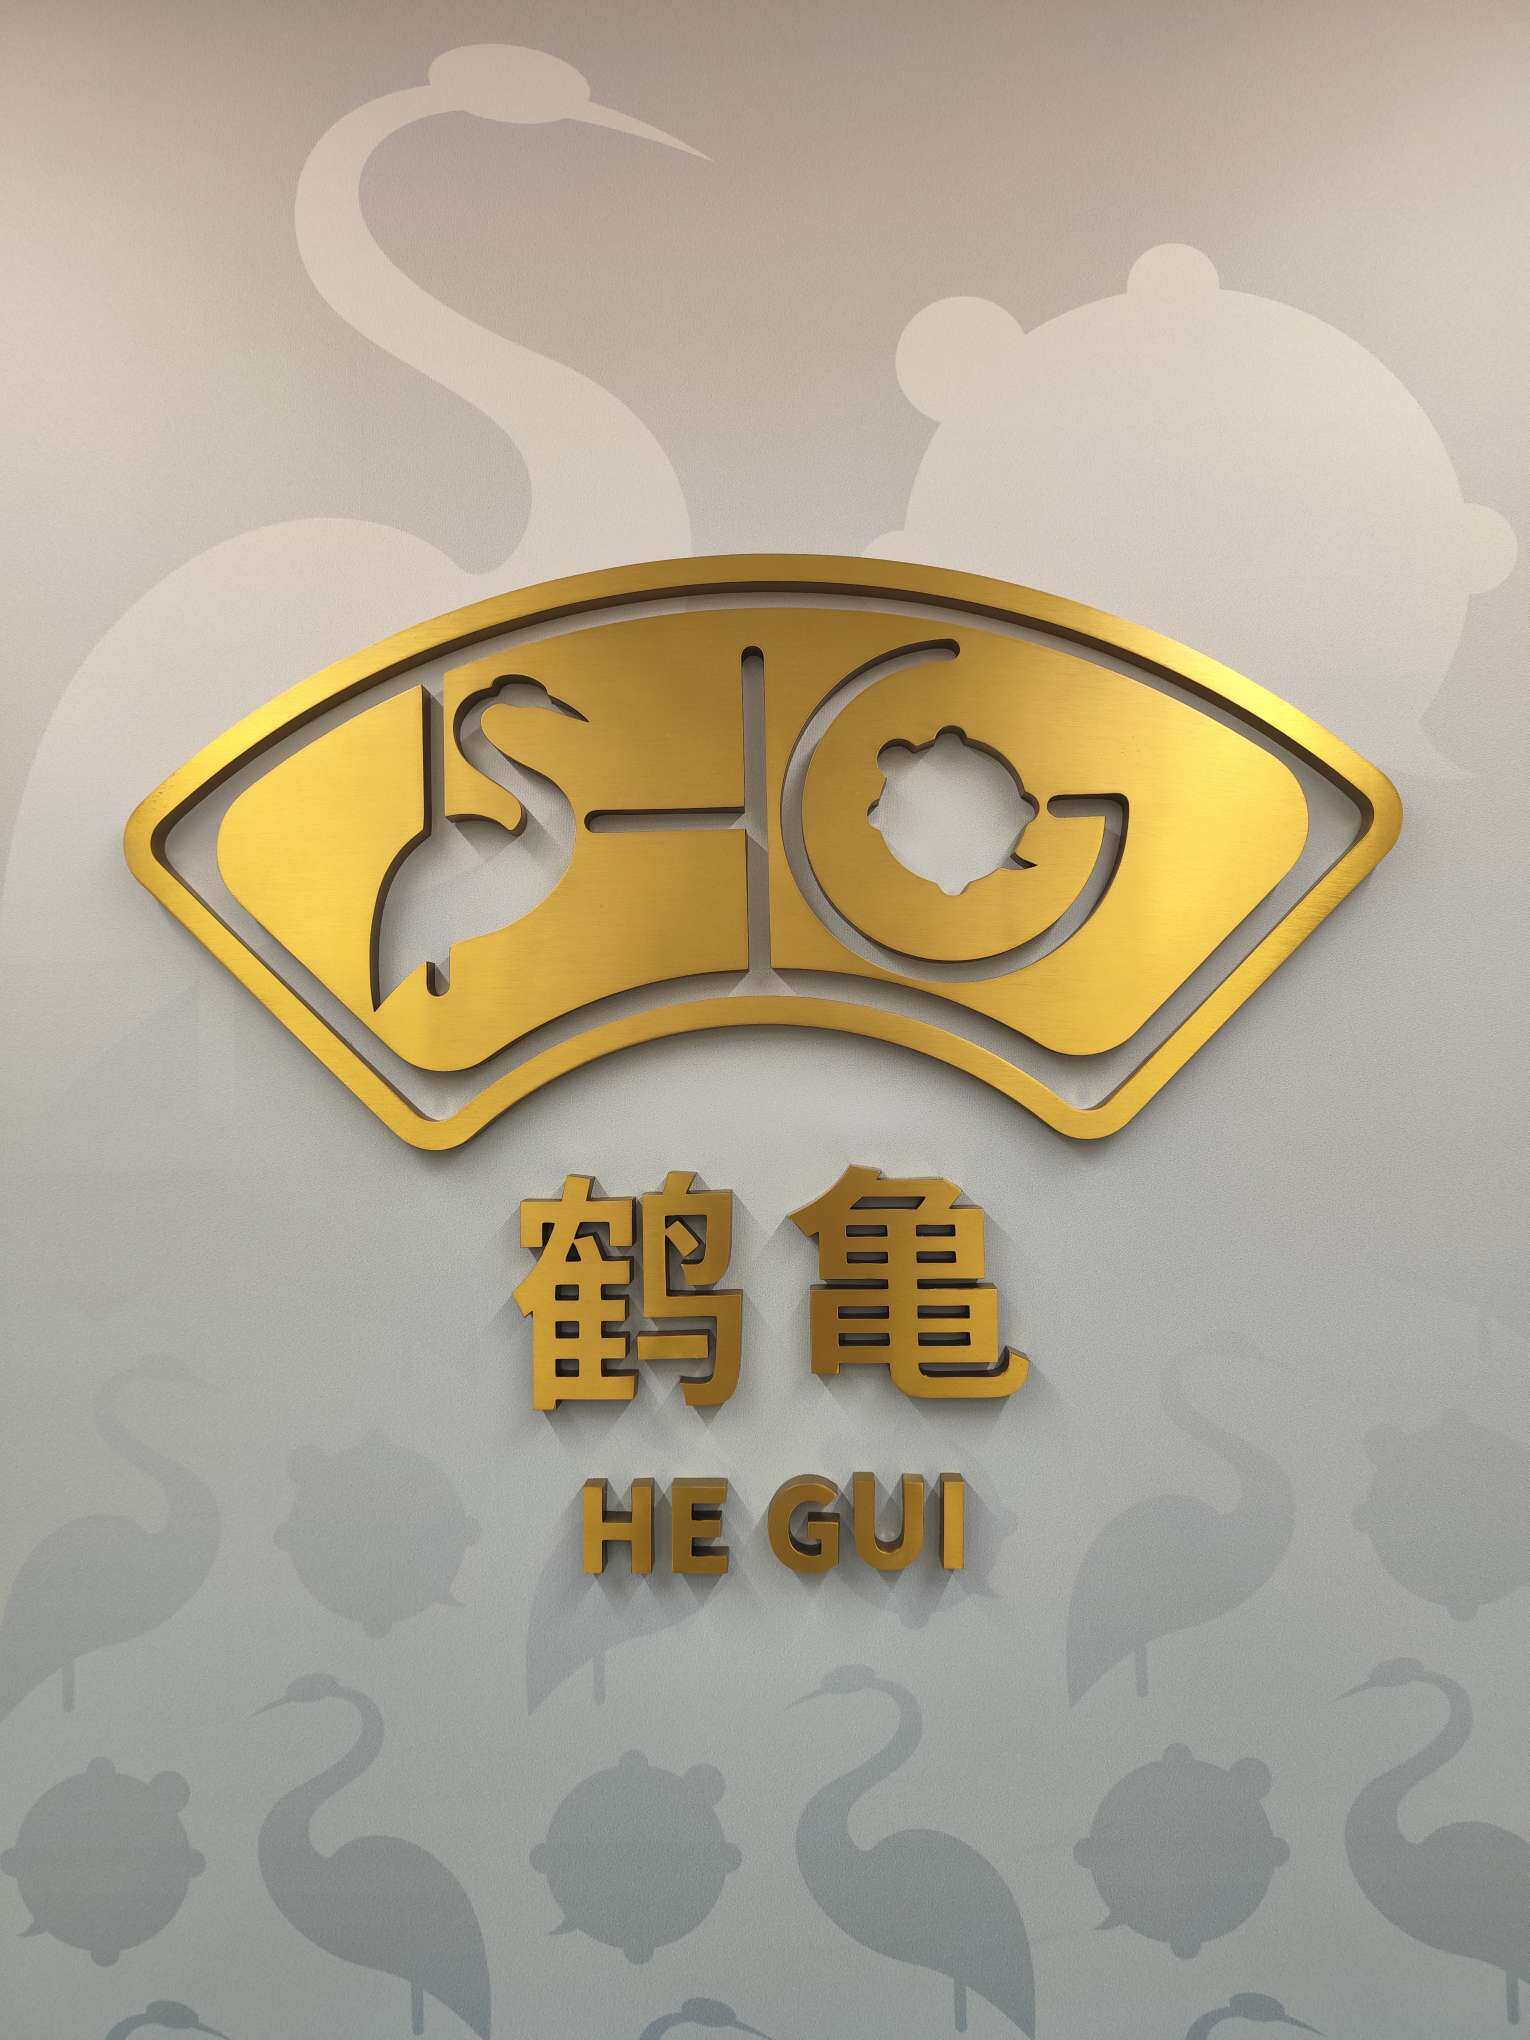 上海鹤龟生命健康科技有限公司logo